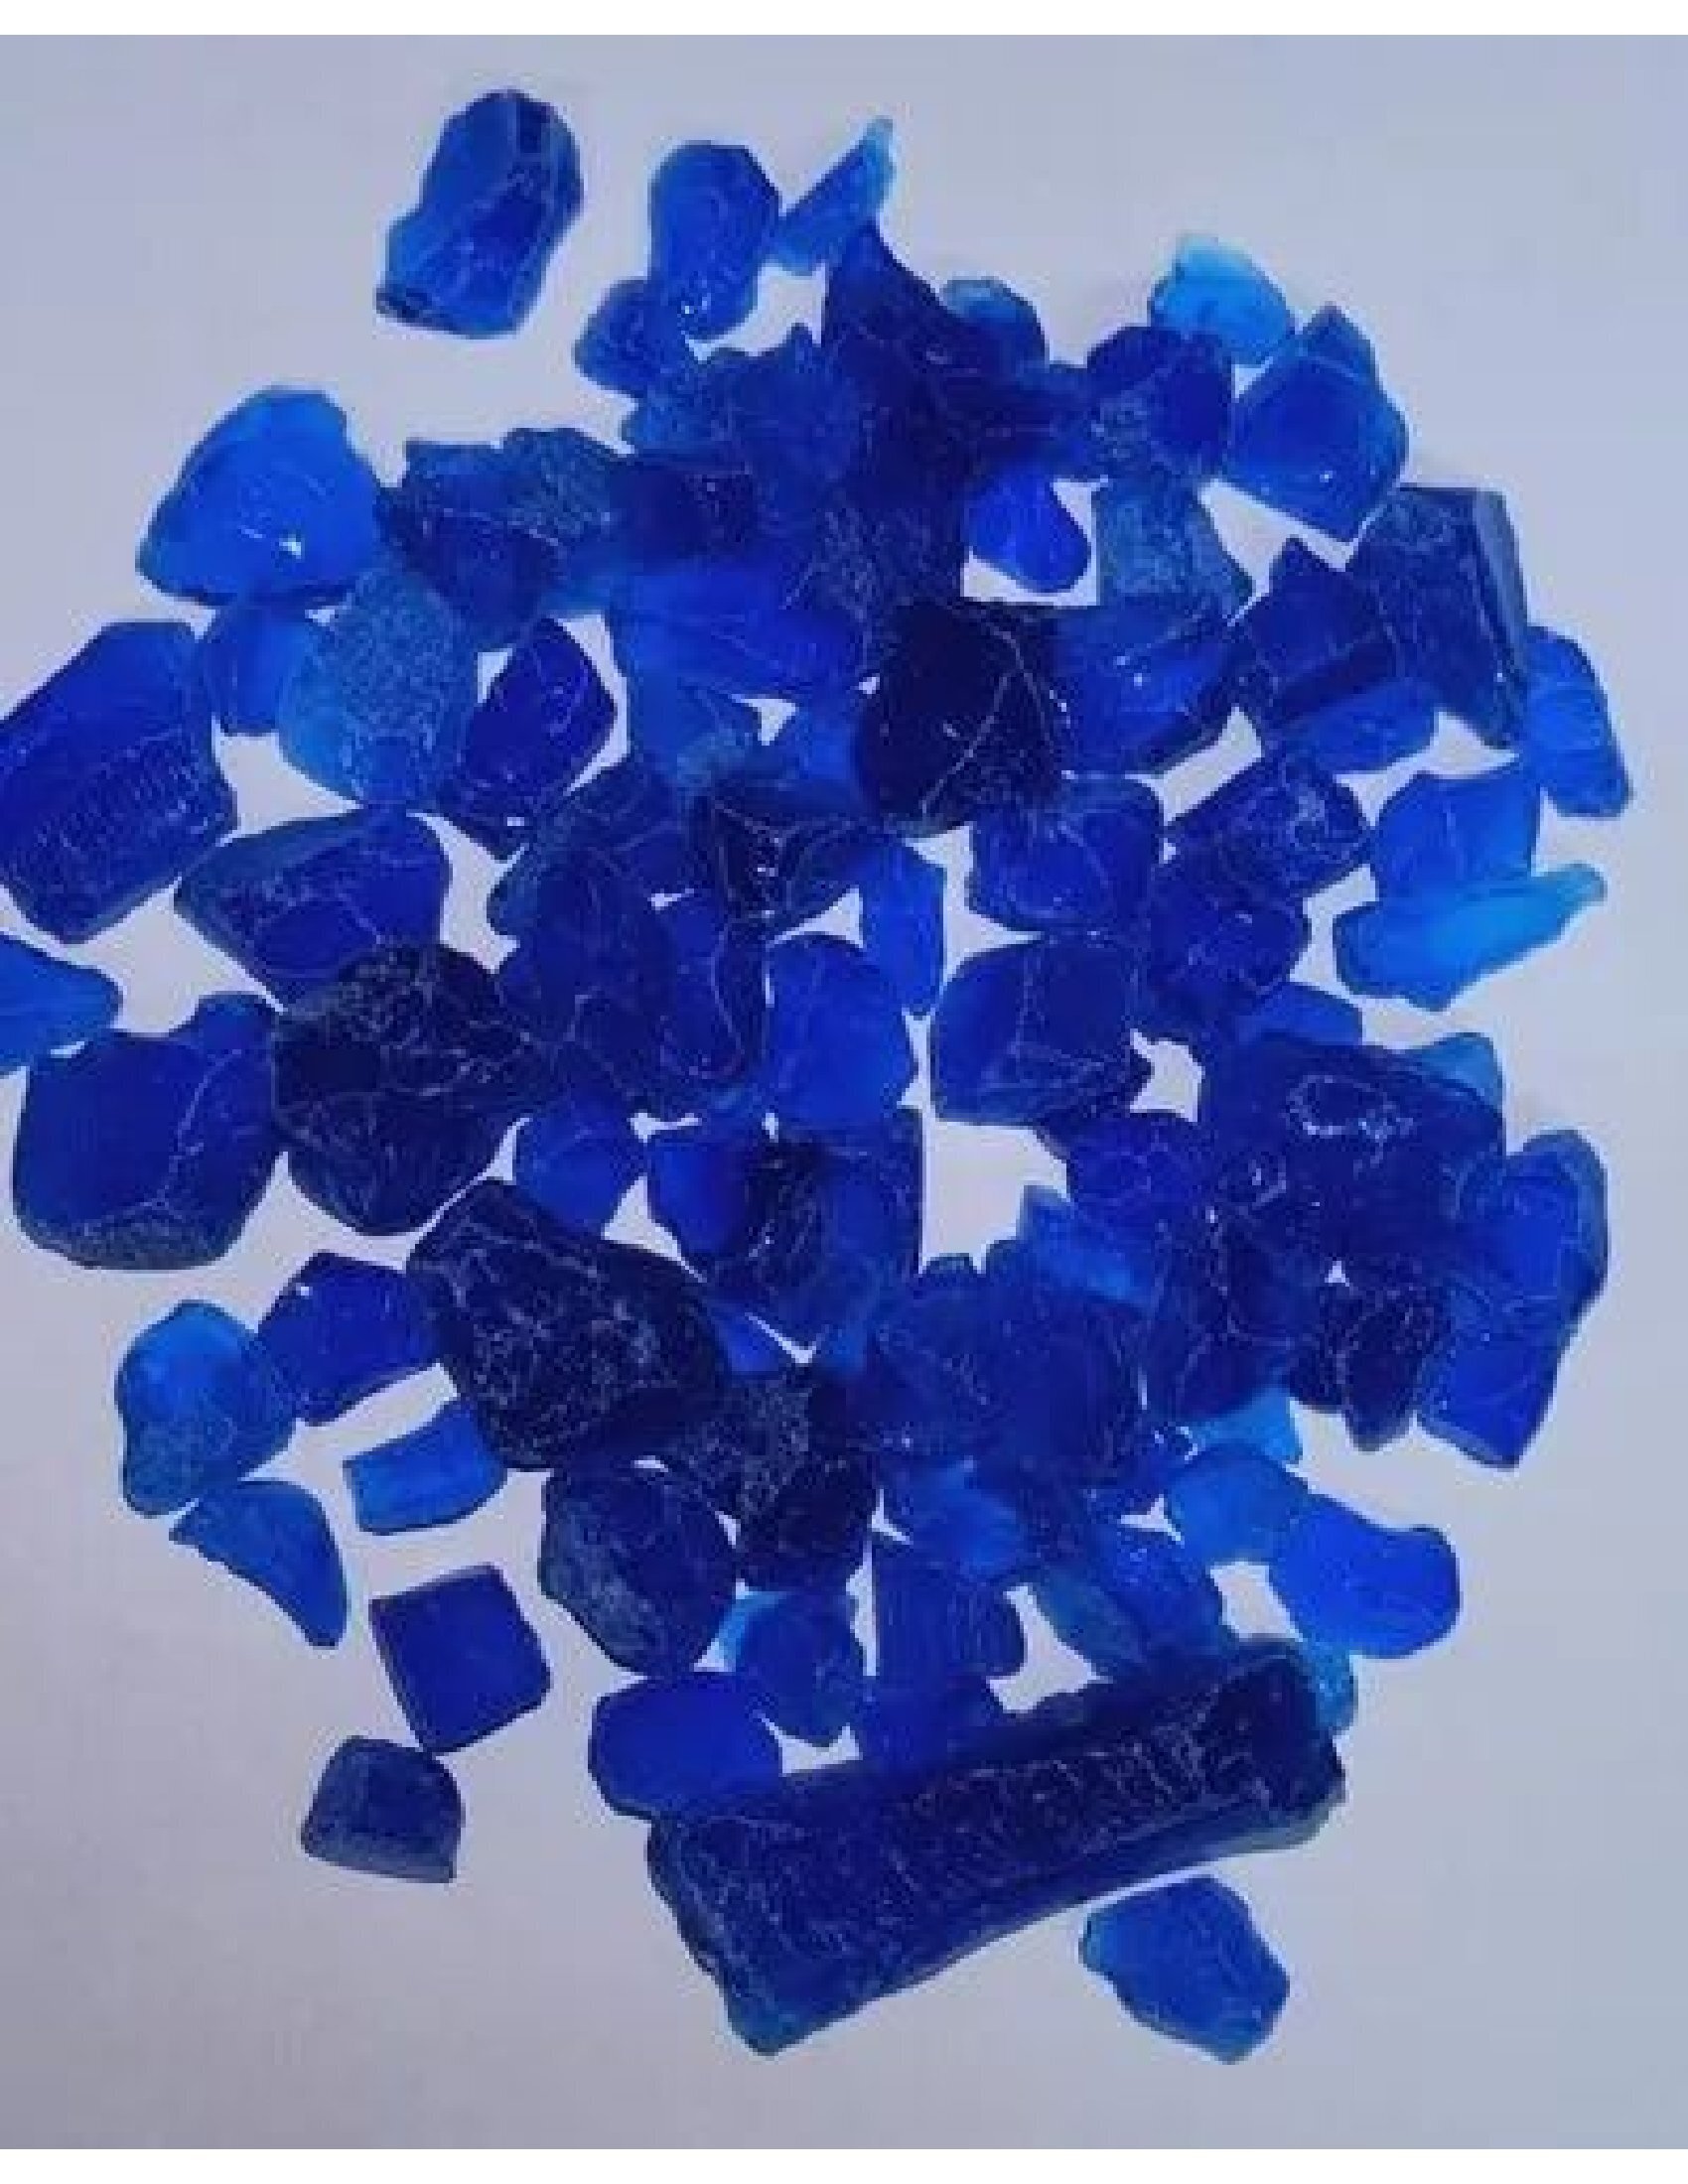 Blue Crystal silica gel